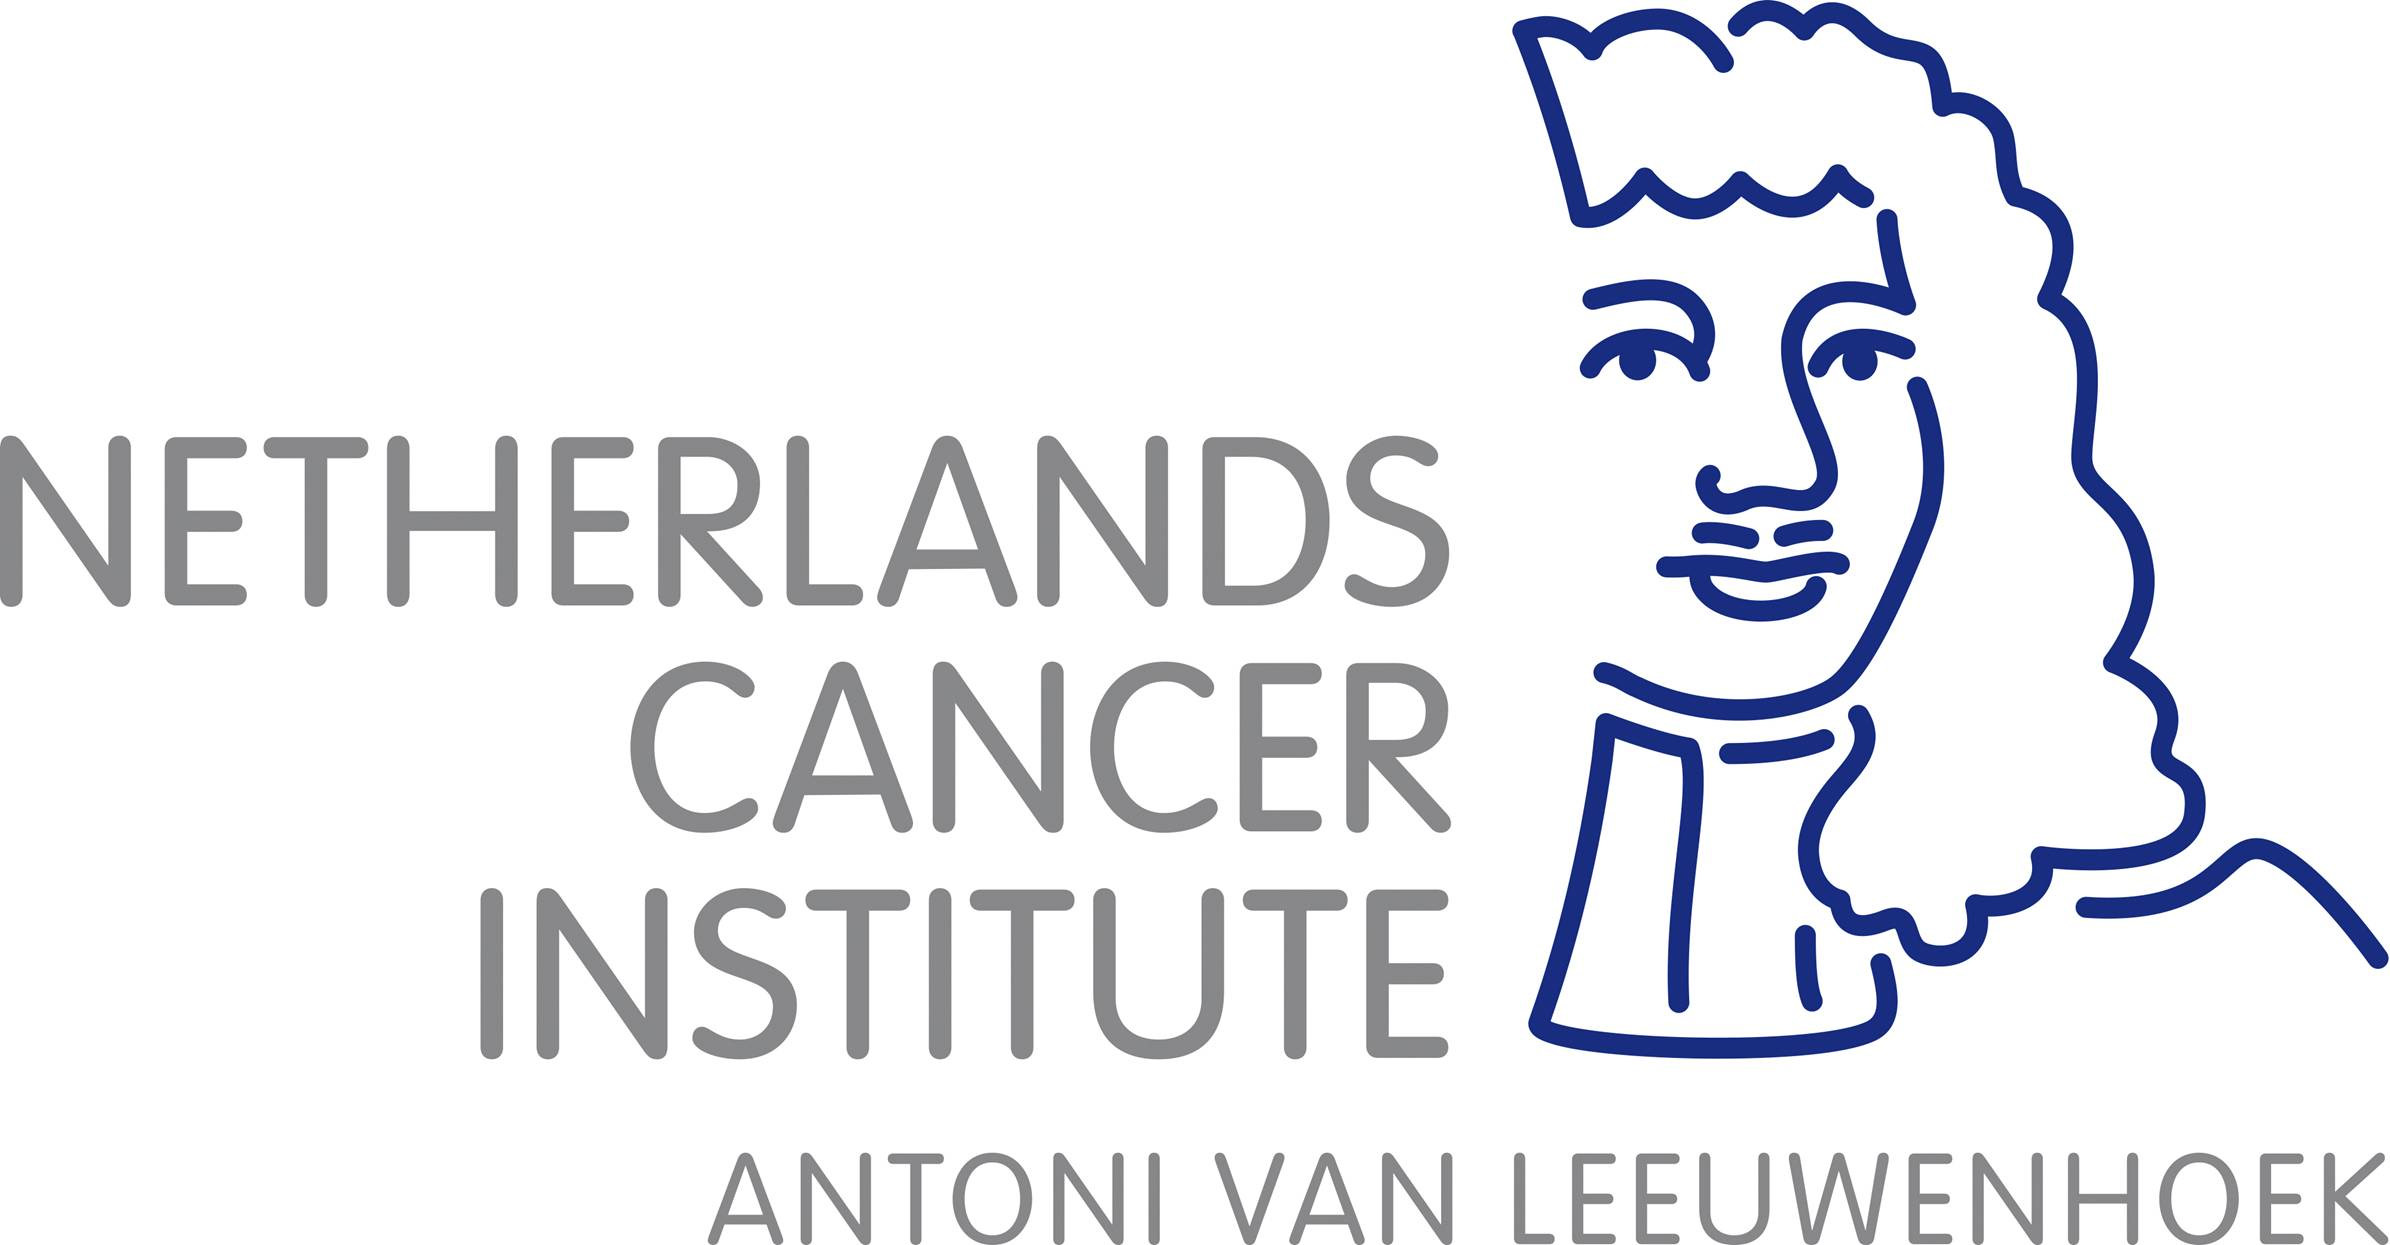 The Netherlands Cancer Institute Antoni van Leeuwenhoek